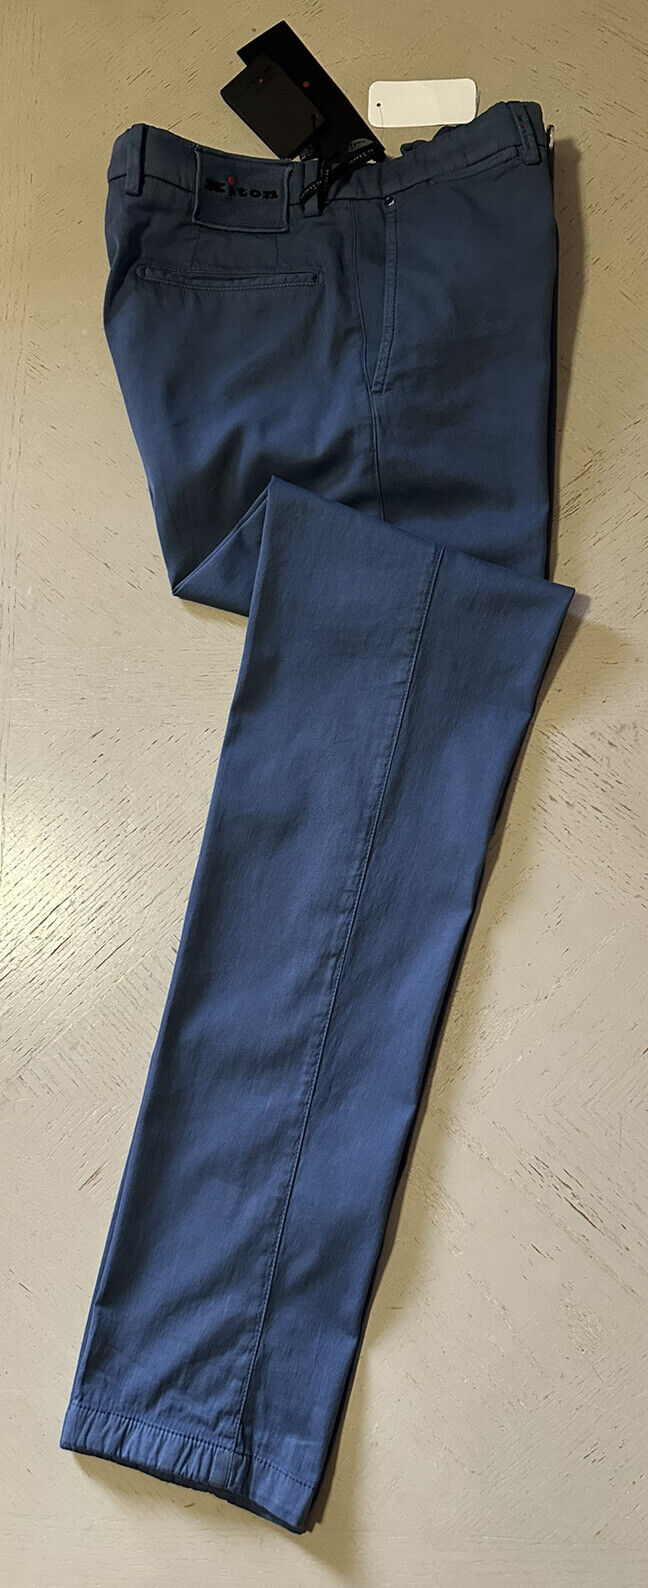 Neu mit Etikett: 1895 $ Kiton Herren-Hose aus Baumwollmischung, Blau, Größe 30 US/46 EU, Italien ￼